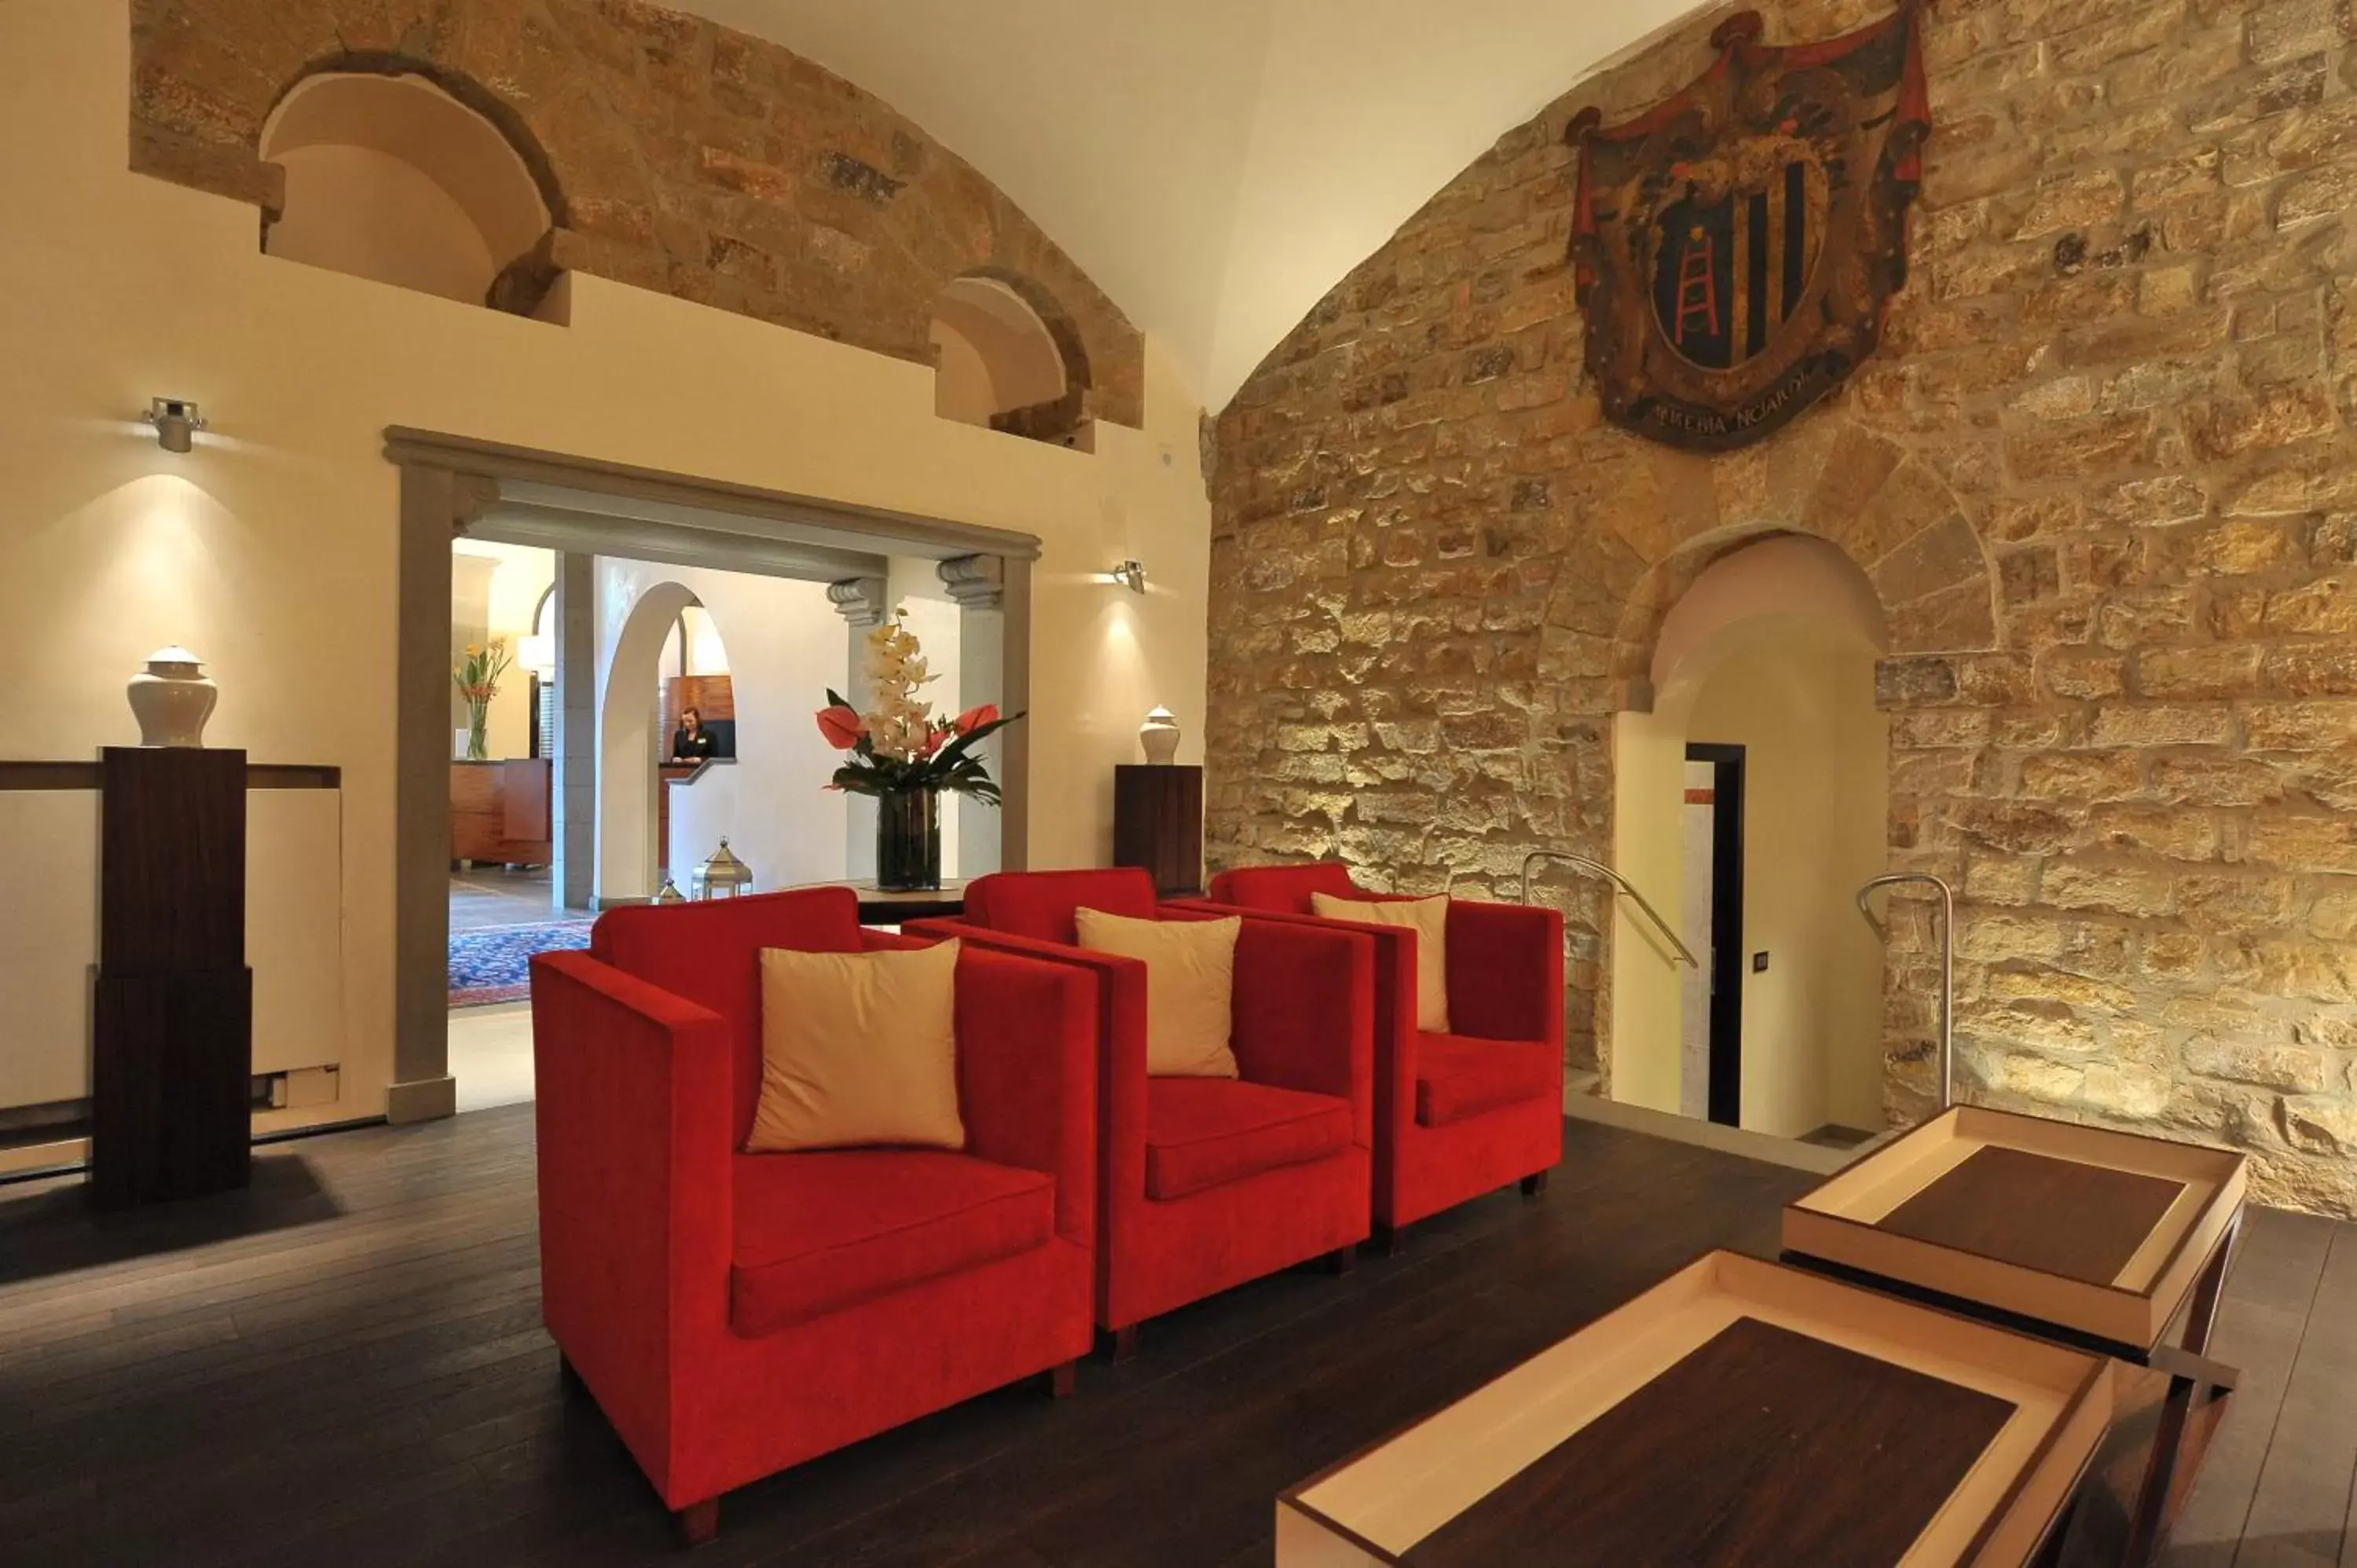 Lobby or reception, Lobby/Reception in Hotel degli Orafi